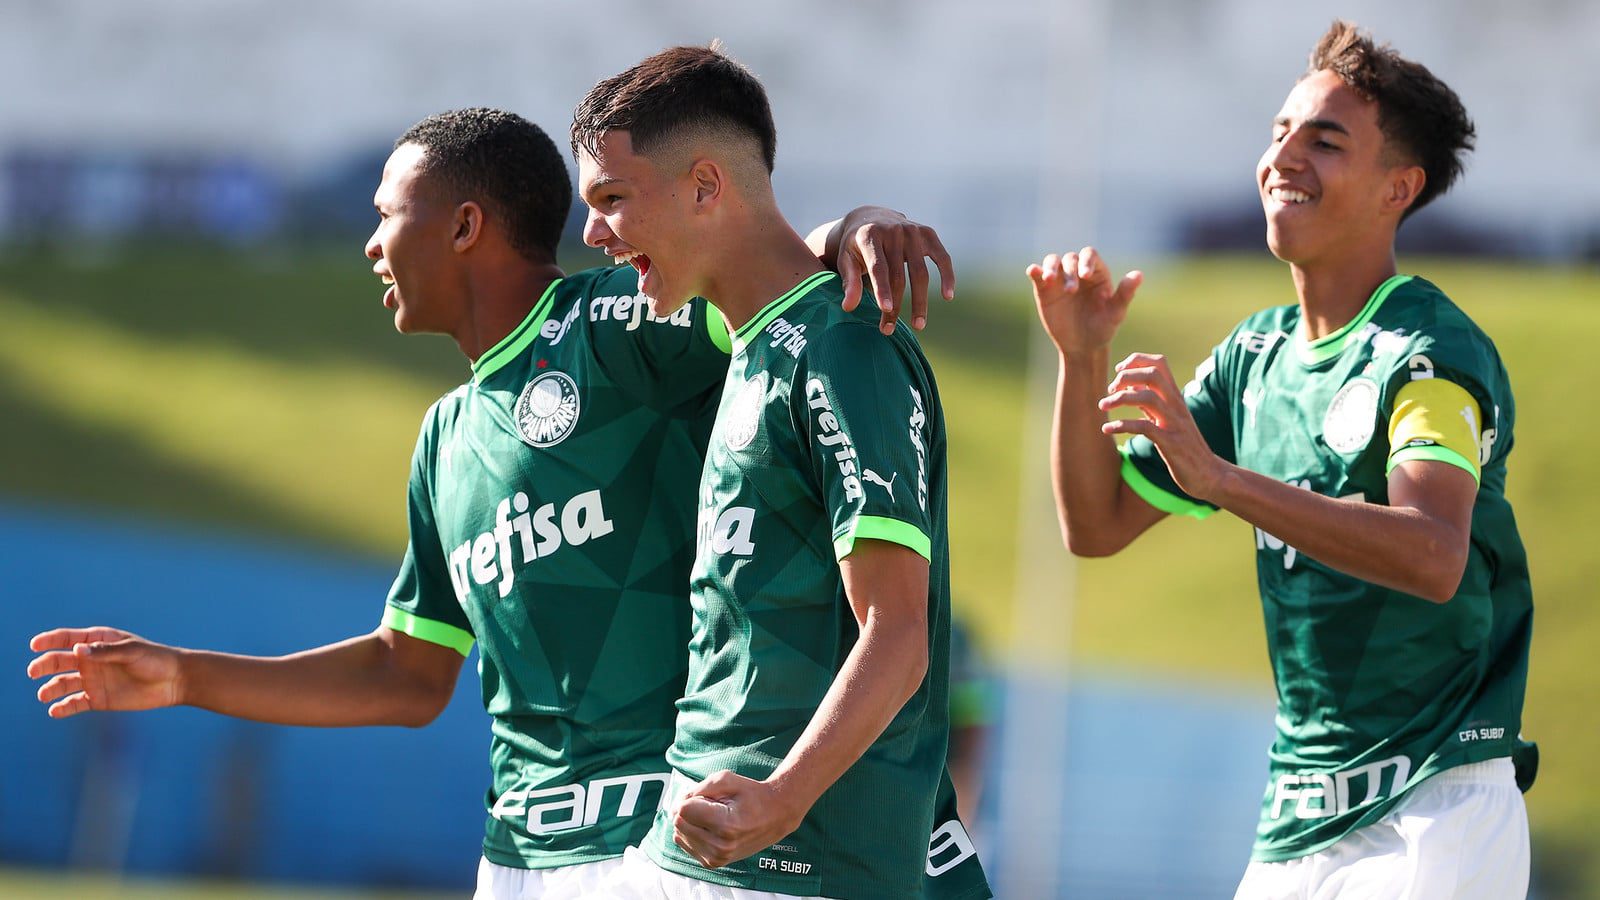 Palmeiras AO VIVO! Veja onde assistir ao jogo diante do São Paulo pela  final do Brasileirão Sub-17